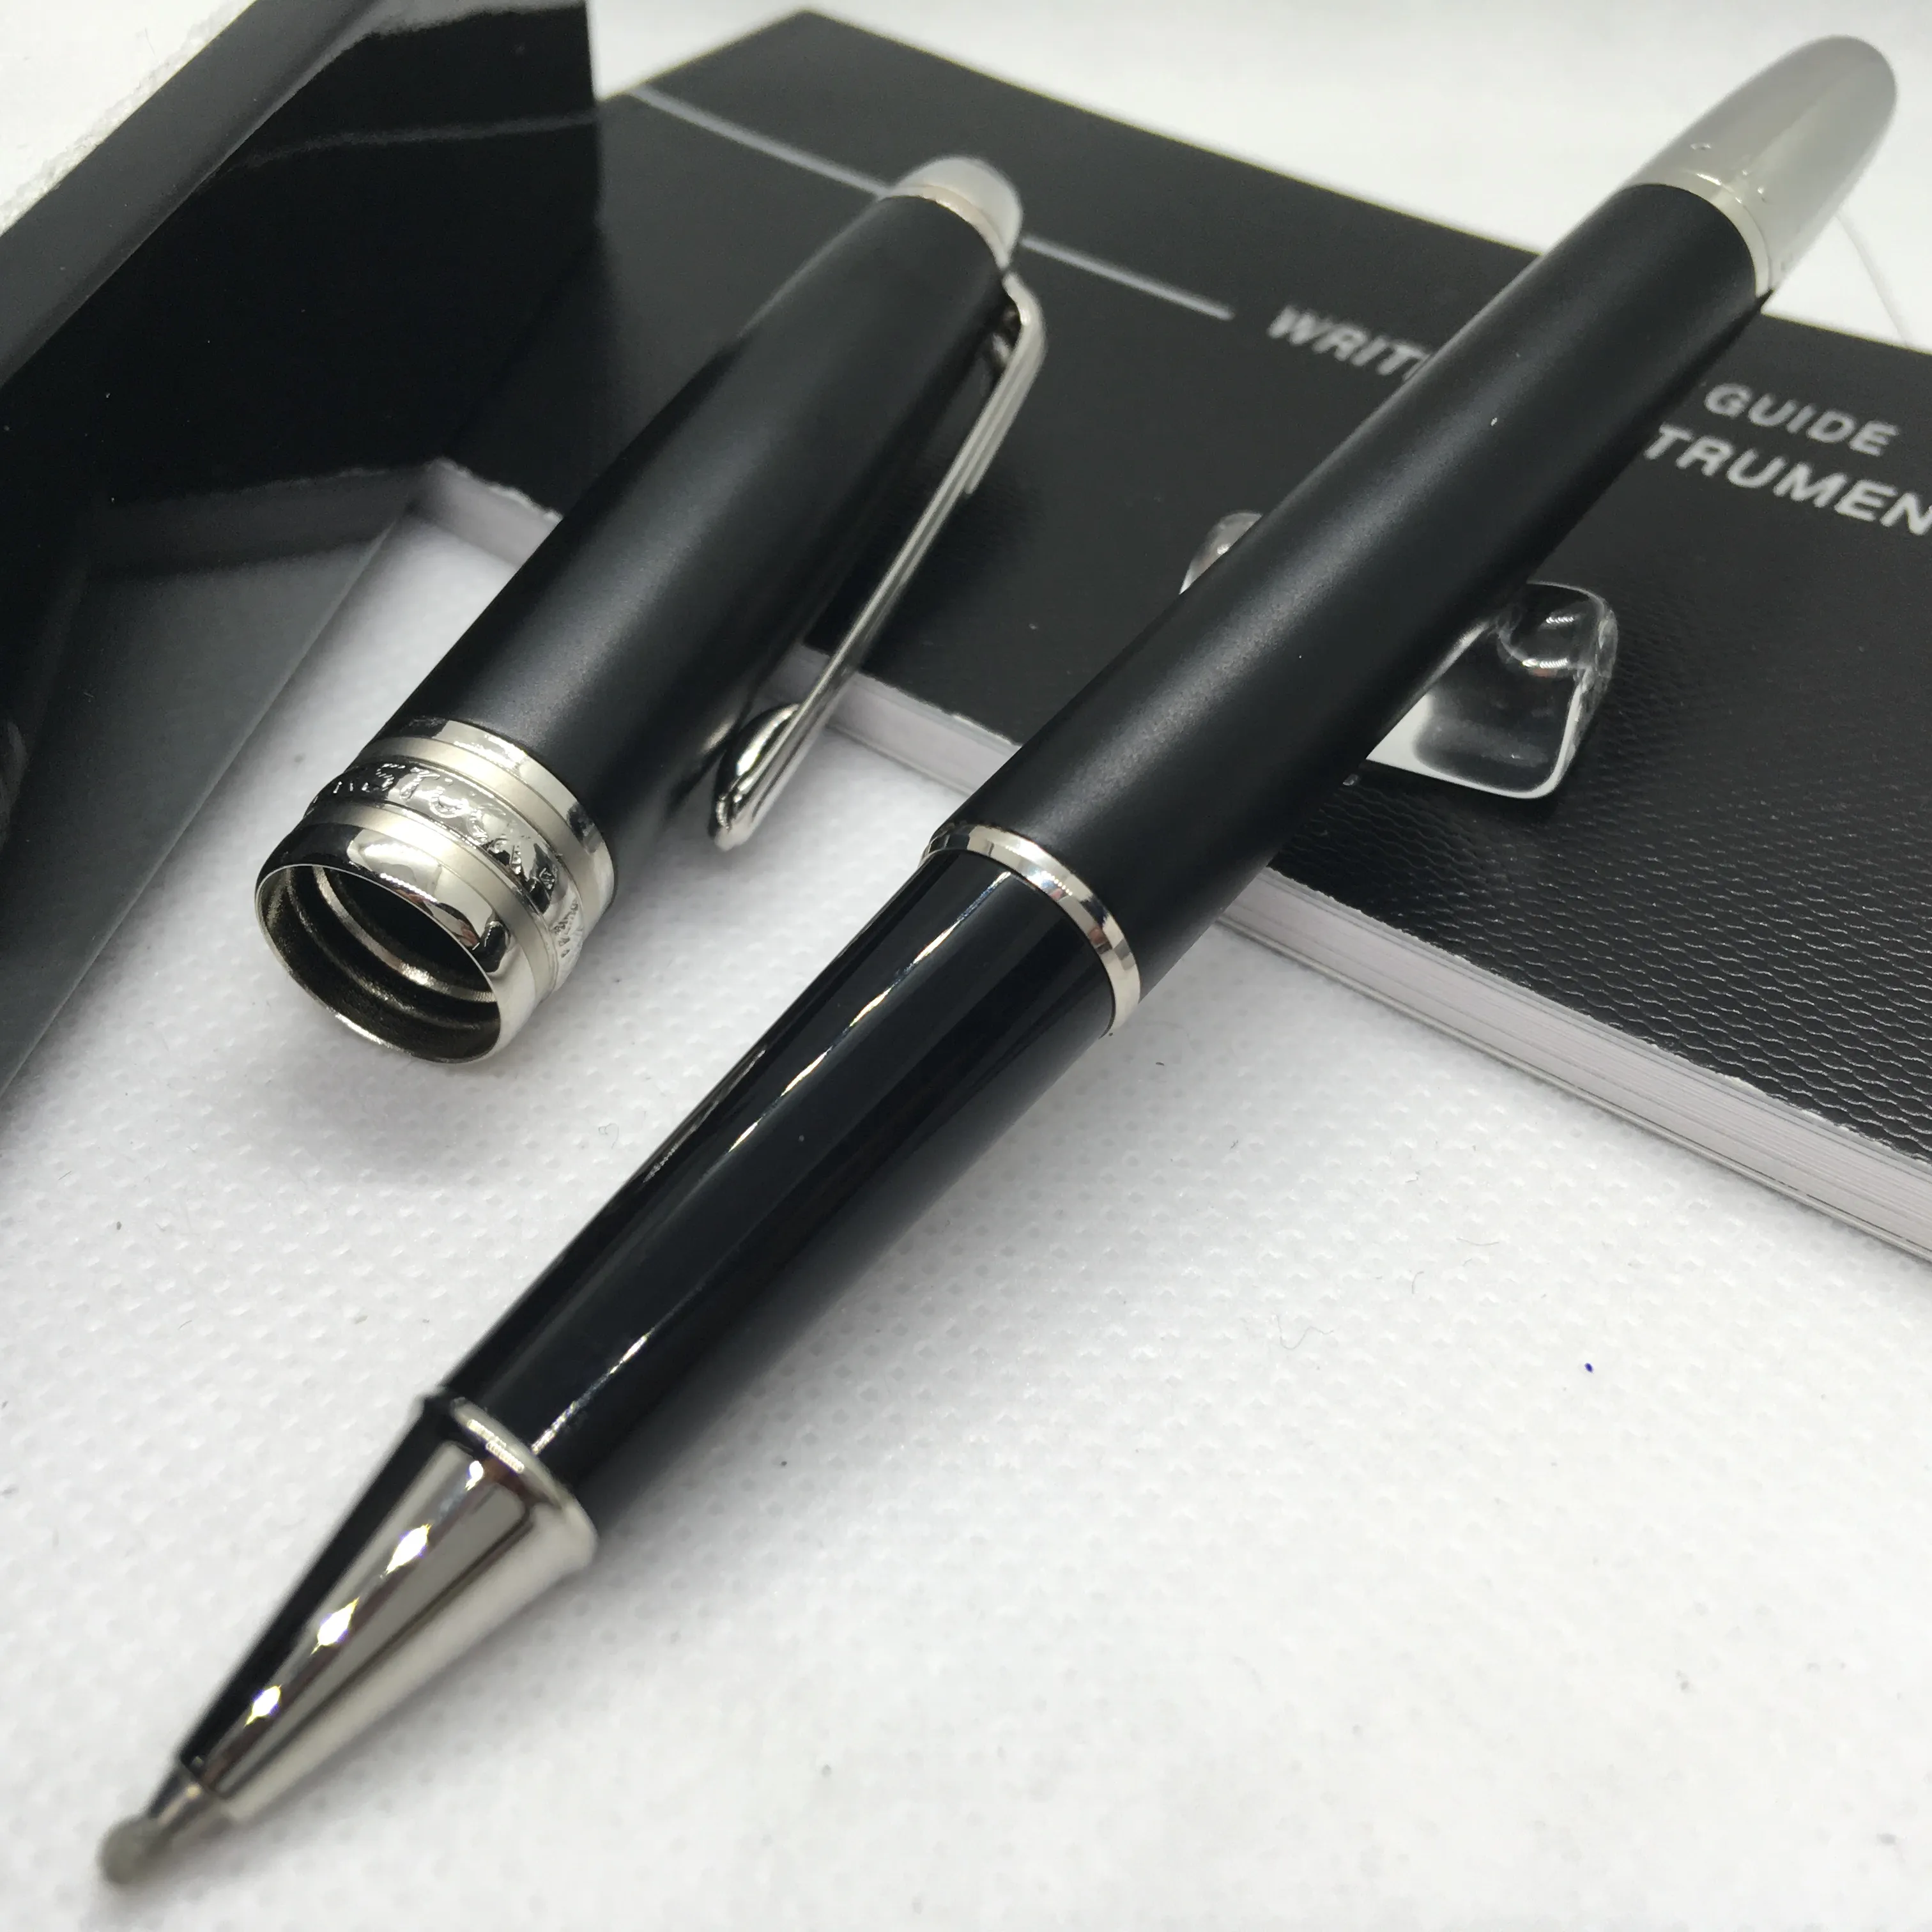 Envie 1 bolsa de couro de presente grátis preto fosco canetas rollerball caneta esferográfica material de escritório escolar com número de série